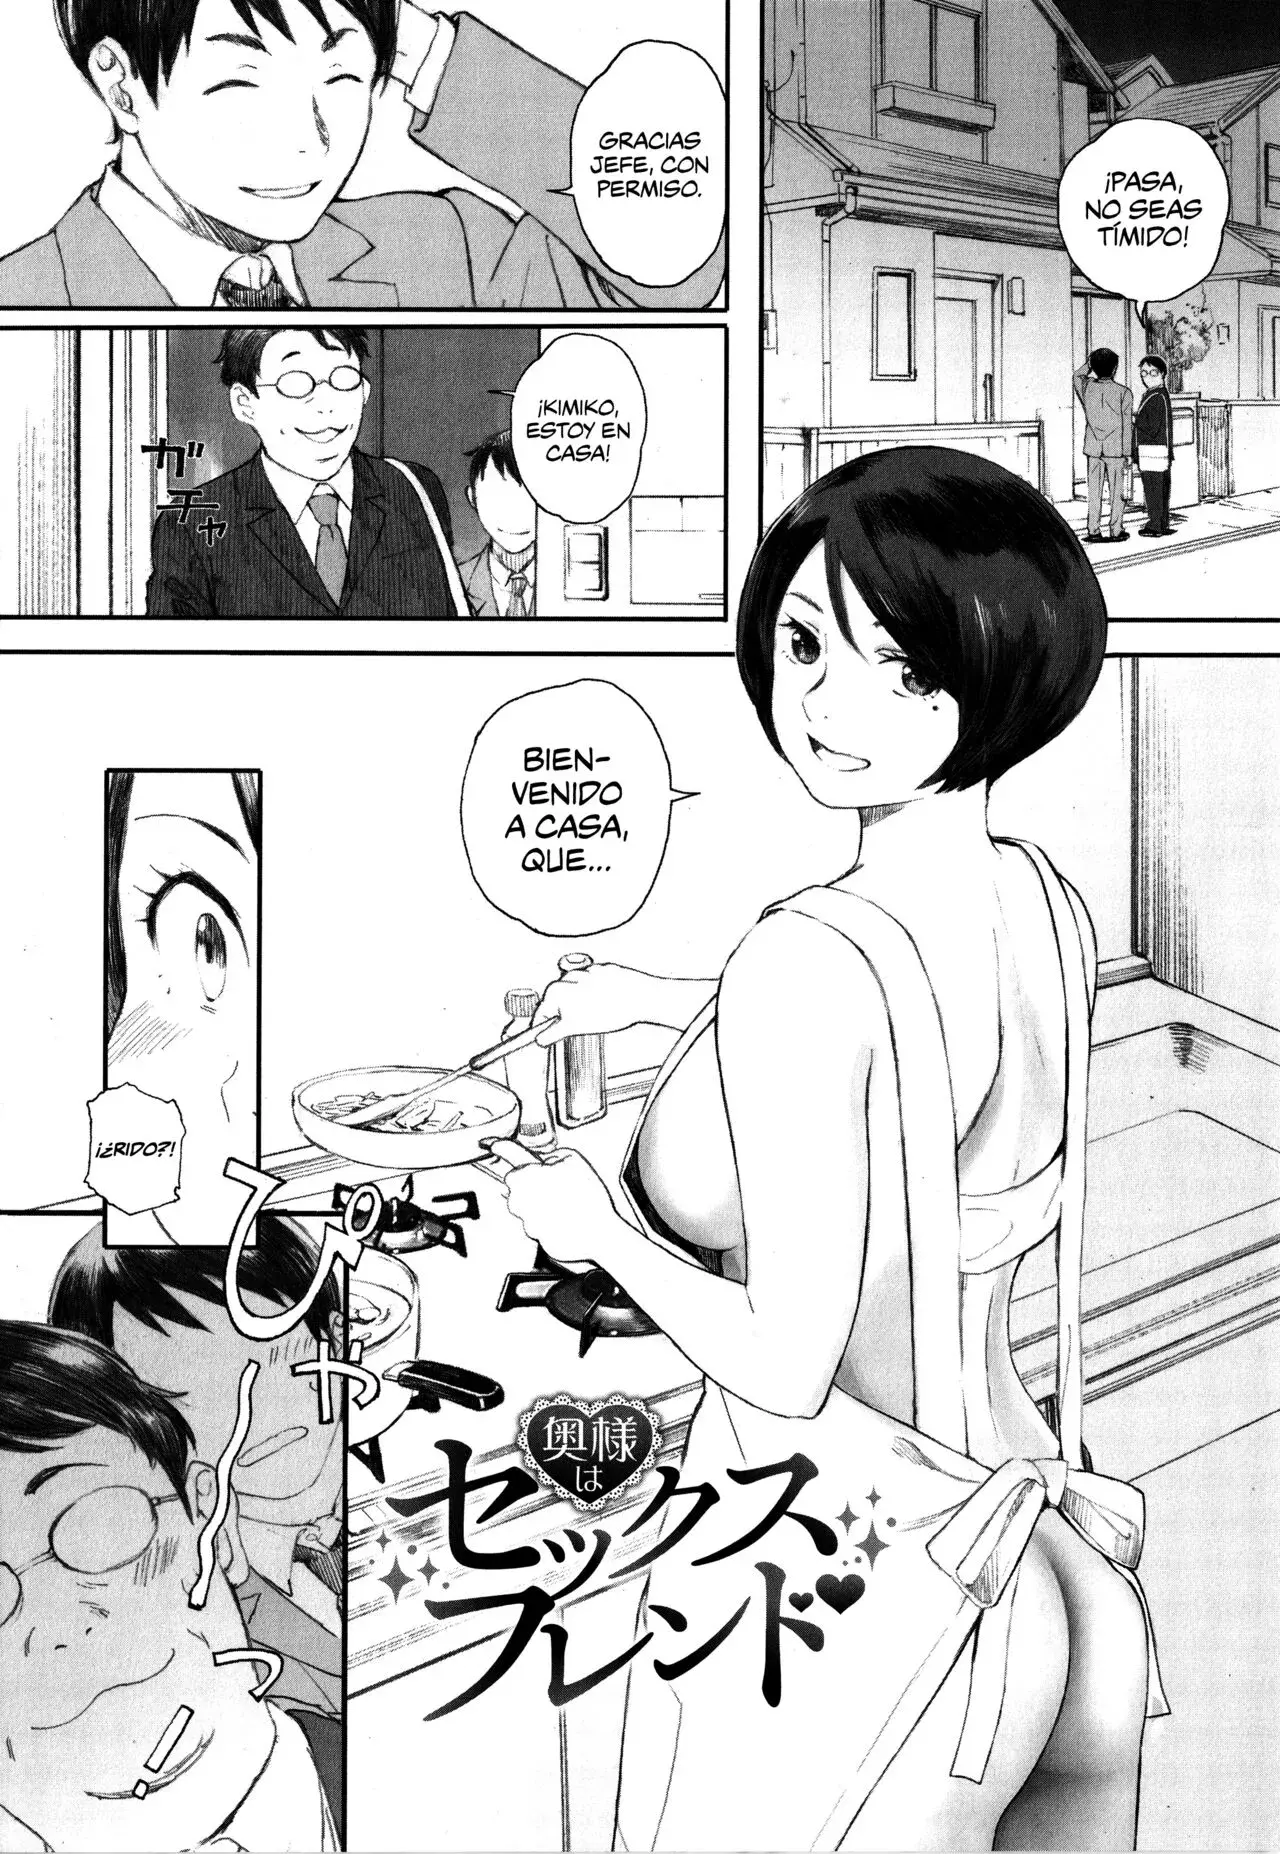 Manga Hentai Gunjo Gunzo Ch. 1-6 (Oku-sama Wa Sex Friend) traducido al español. Esposa infiel con el compañero de trabajo de su marido.